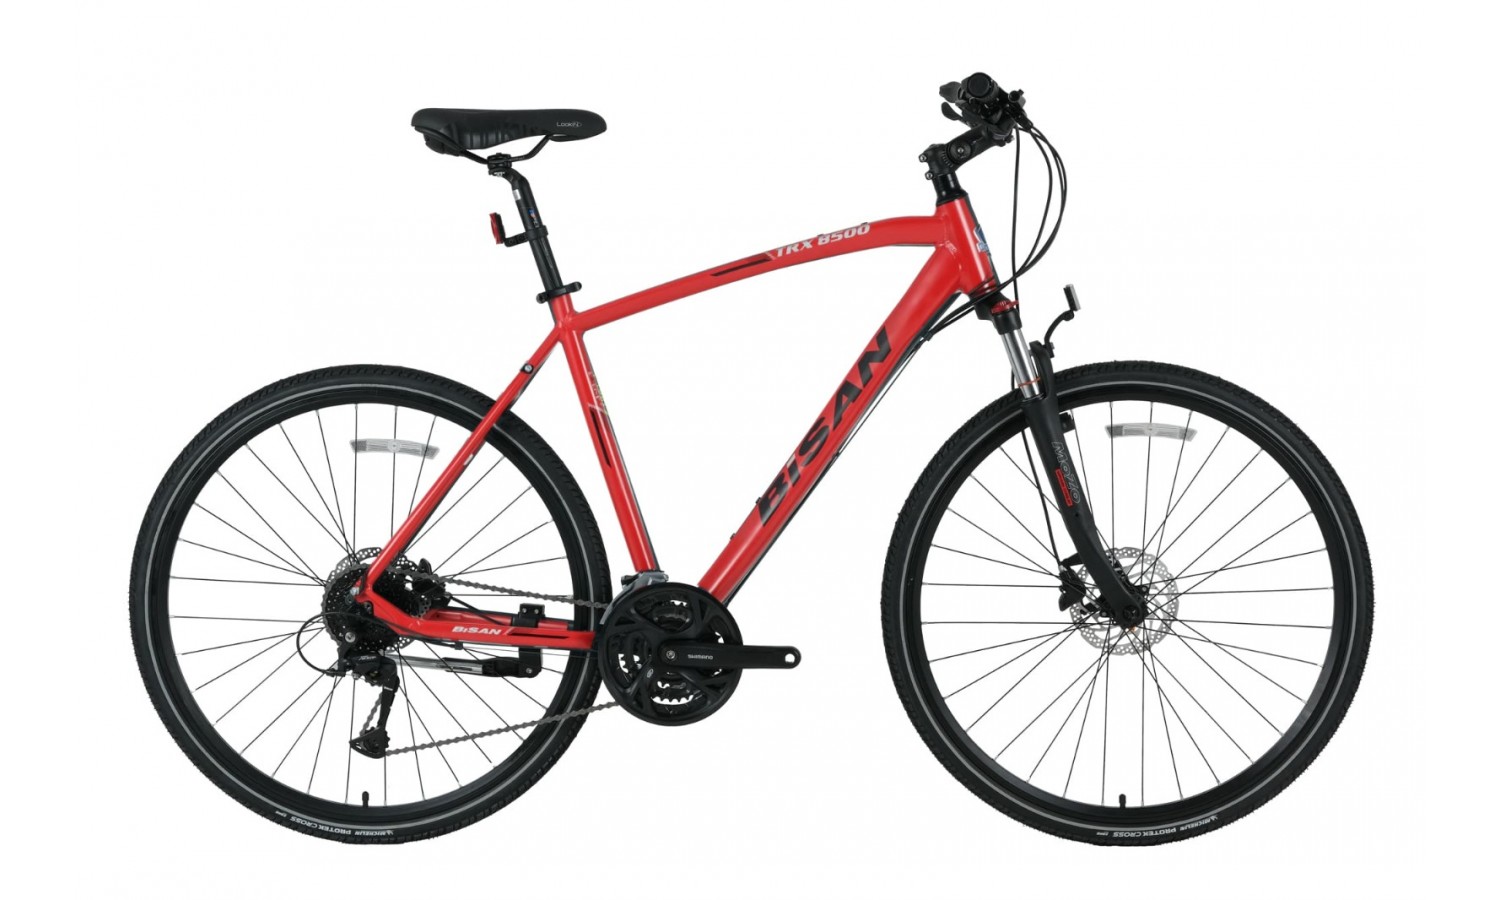 Bisan Trx 8500 28-Jant Hd Trekking Bisiklet (Kırmızı-Siyah)